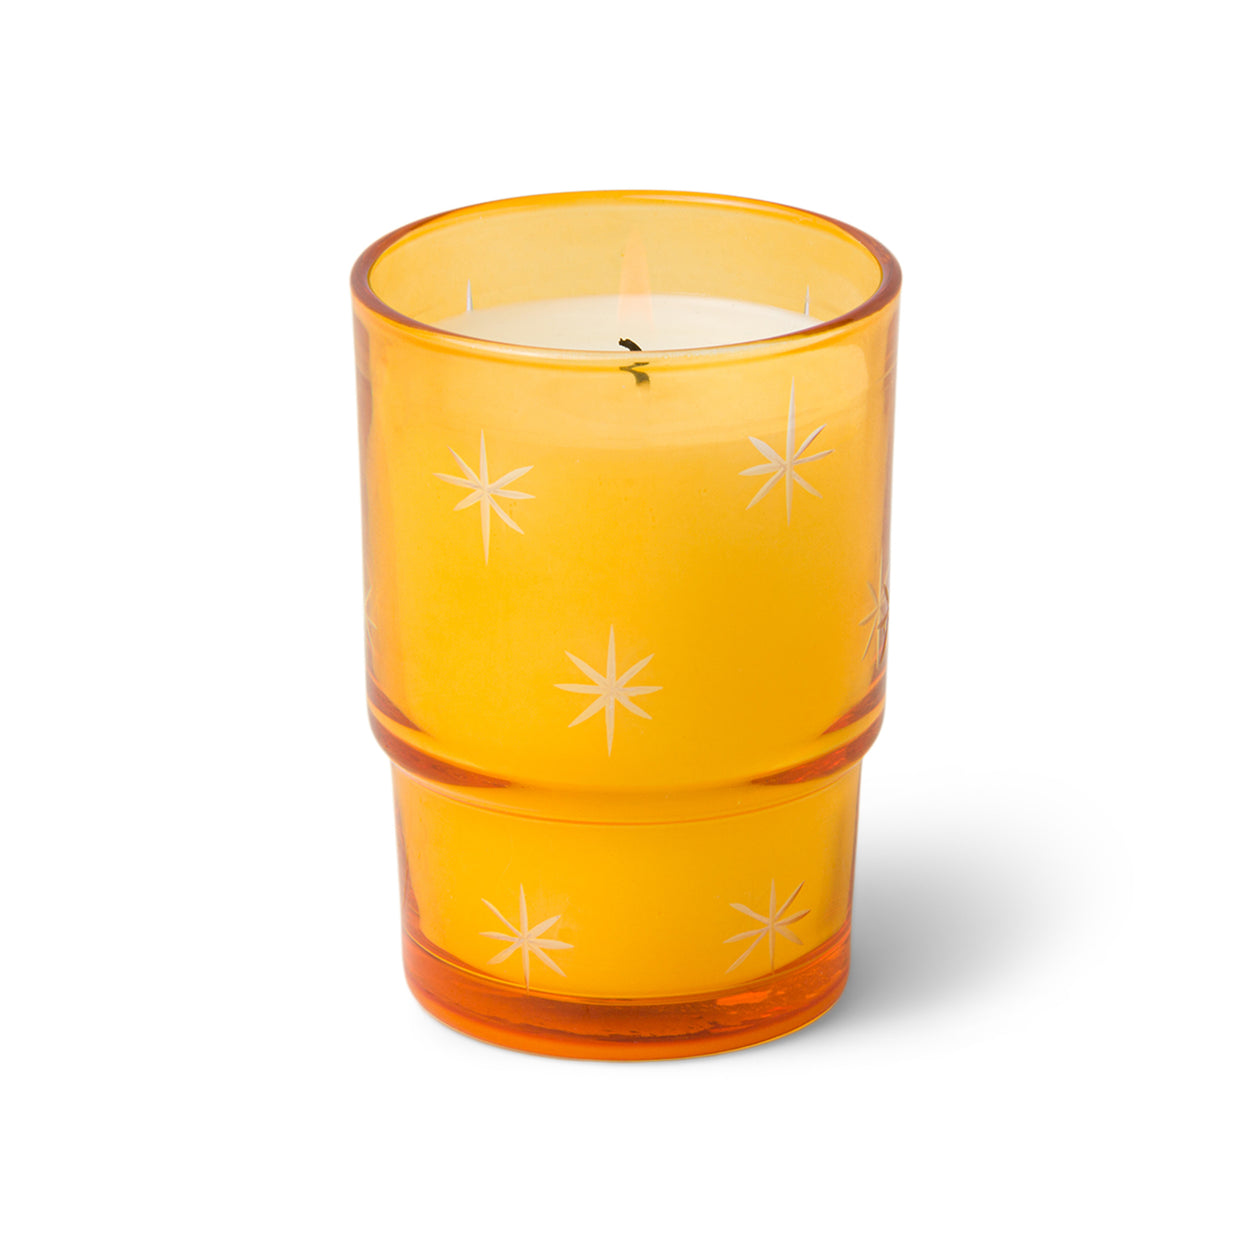 Noel 5.5 oz Etched Stars on Orange Transparent Glass Candle - Sweet Orange & Fir